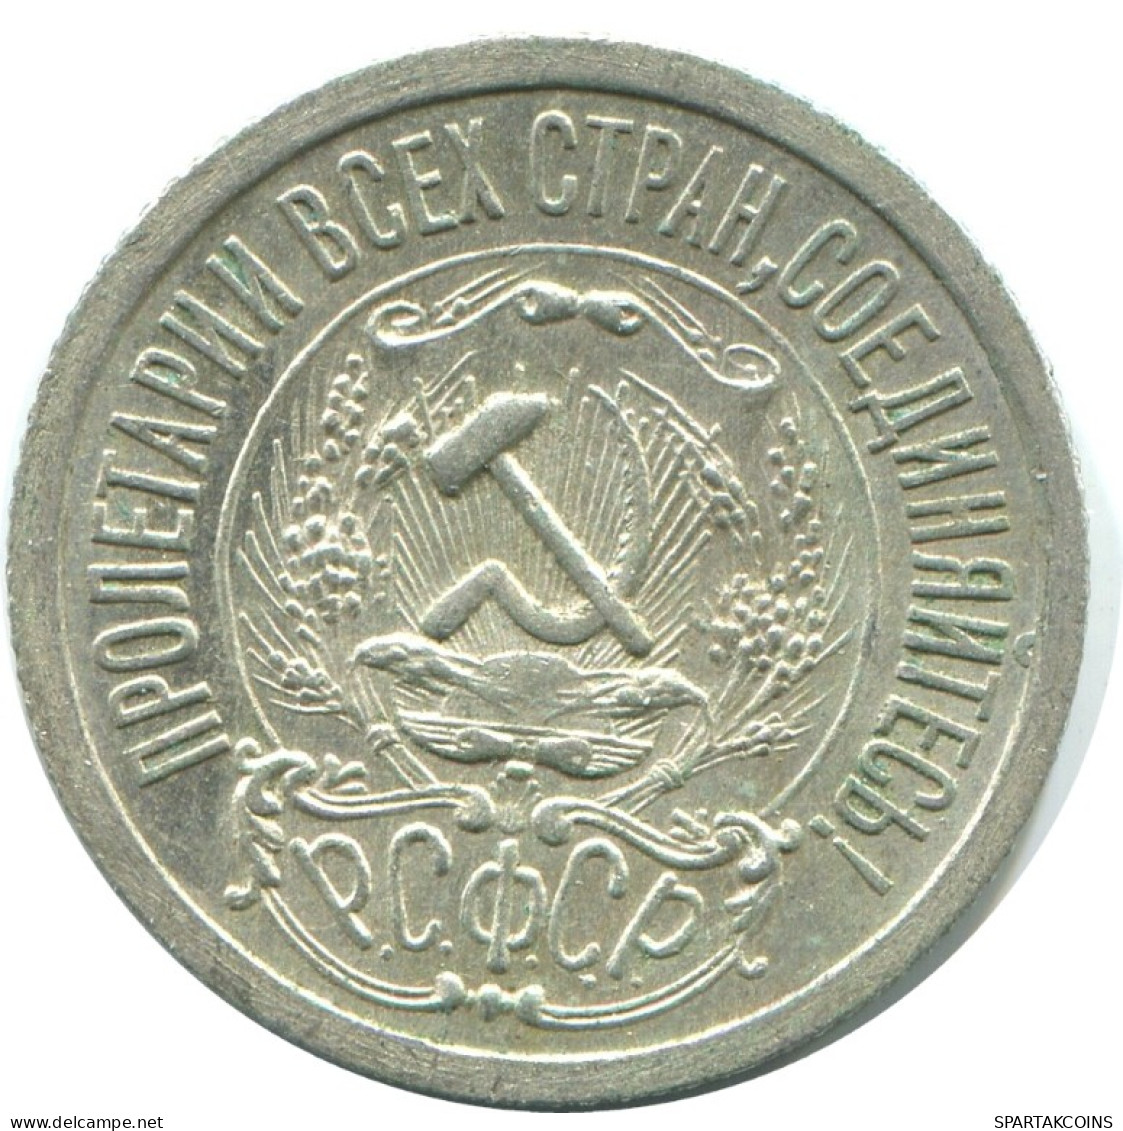 15 KOPEKS 1923 RUSSIA RSFSR SILVER Coin HIGH GRADE #AF059.4.U.A - Russland